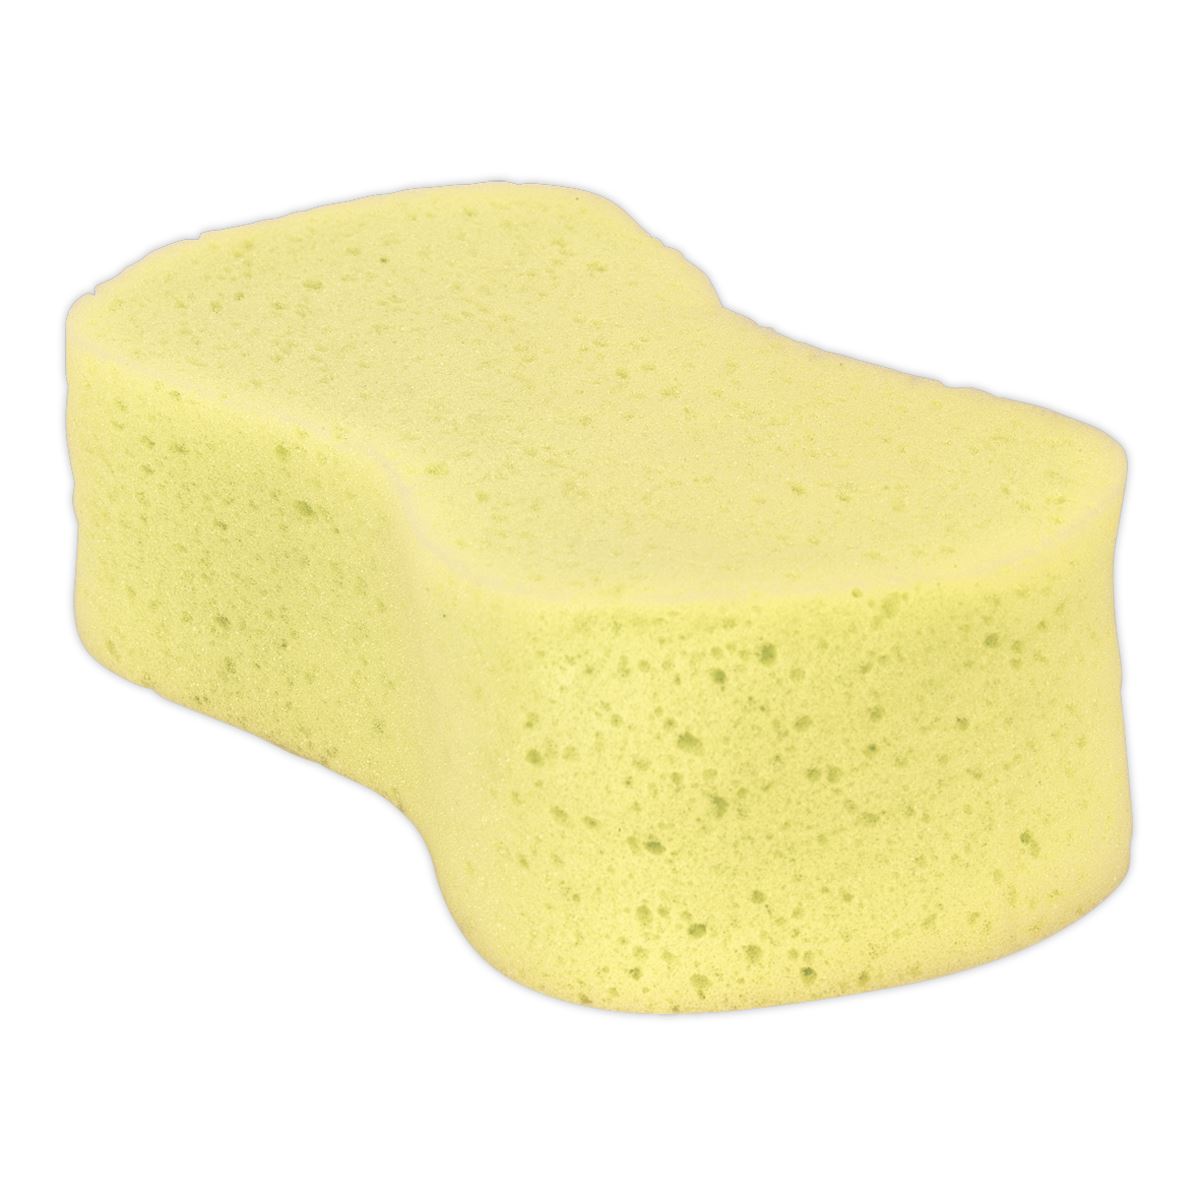 Sealey Large Sponge